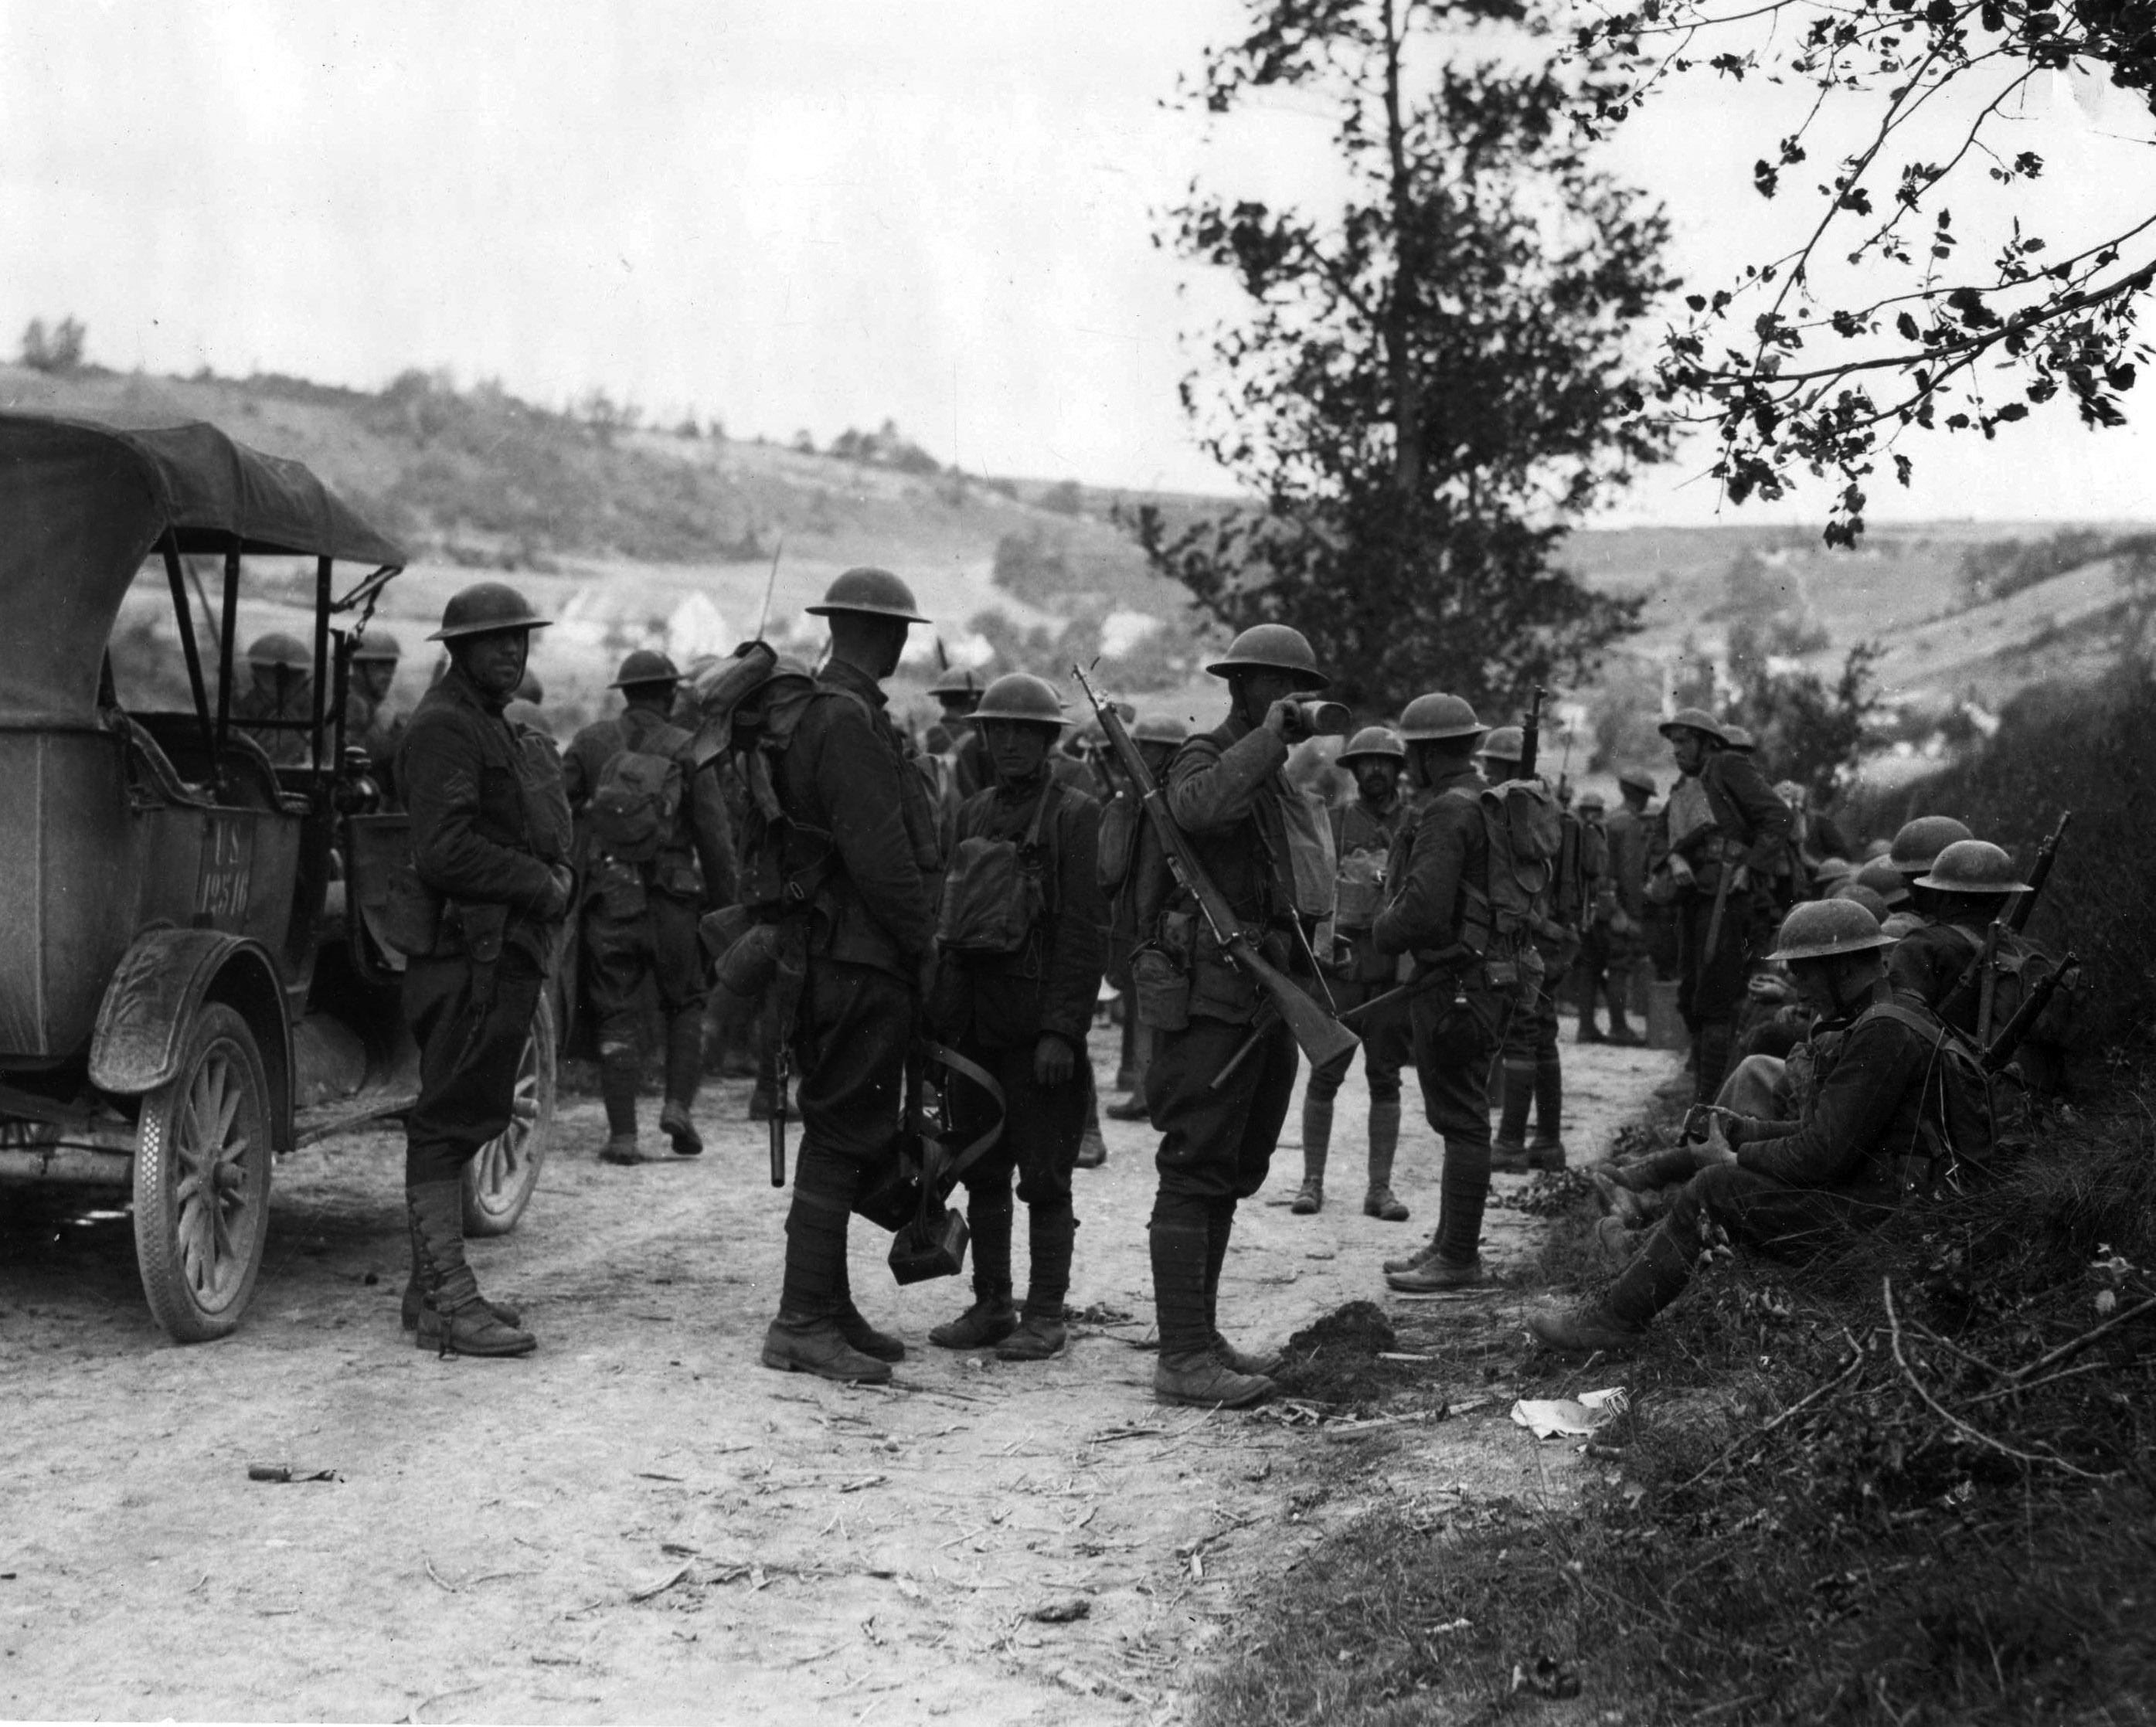 Солдаты из 1-го дивизиона 28-го пехотного полка, вооруженные M1903, отдыхают на привале. Франция, 1918 год